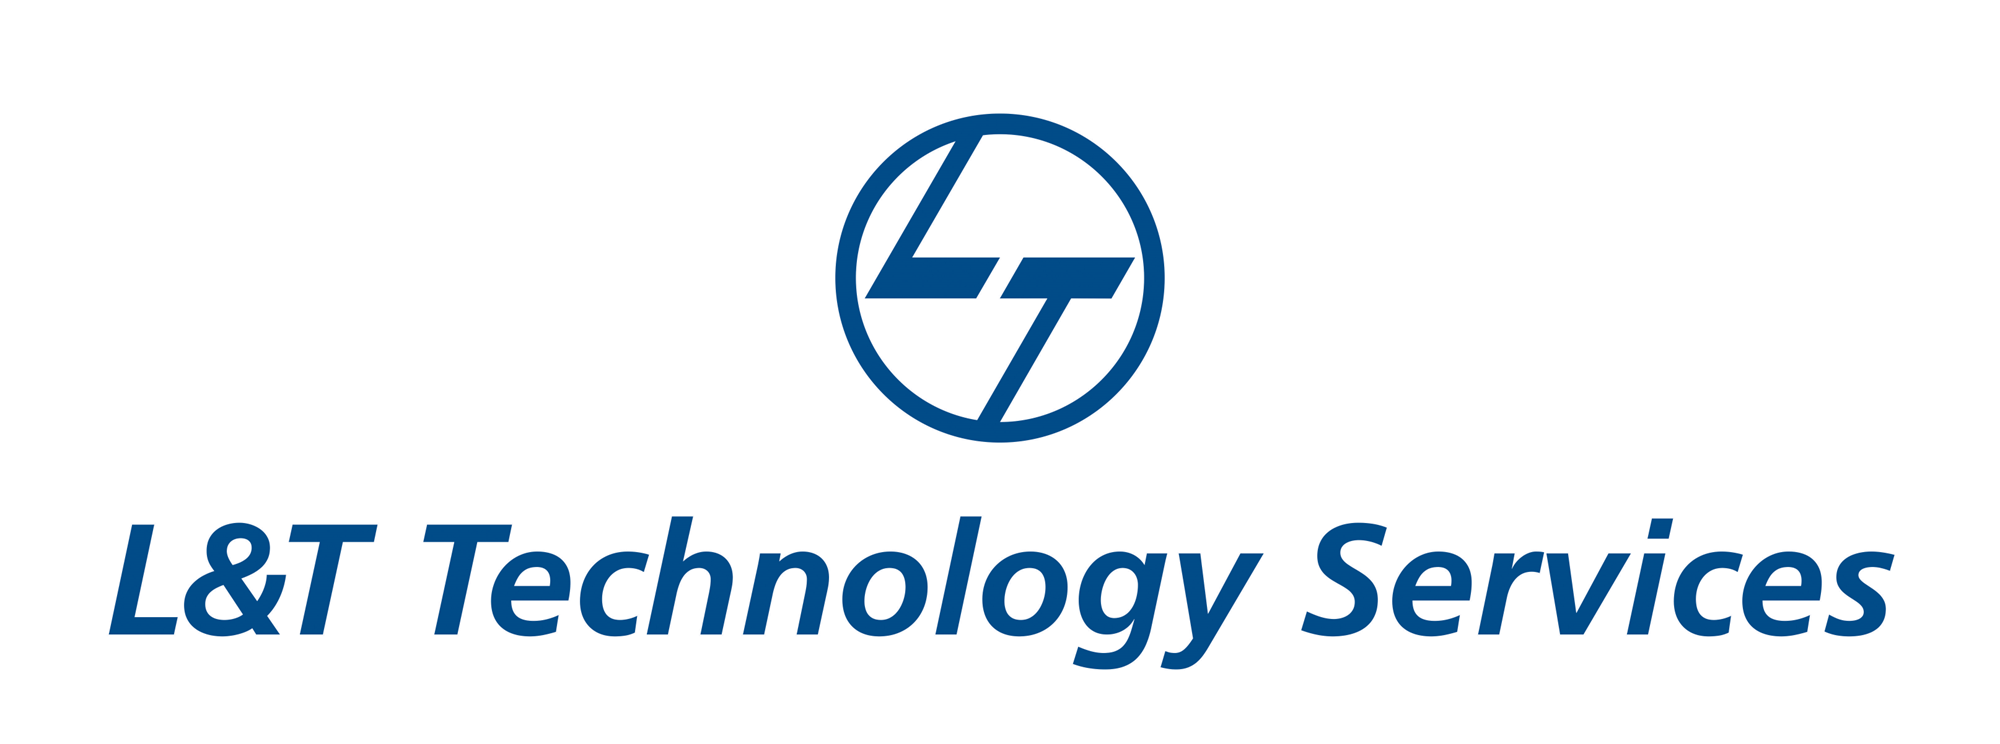 L&T 기술 서비스 회사